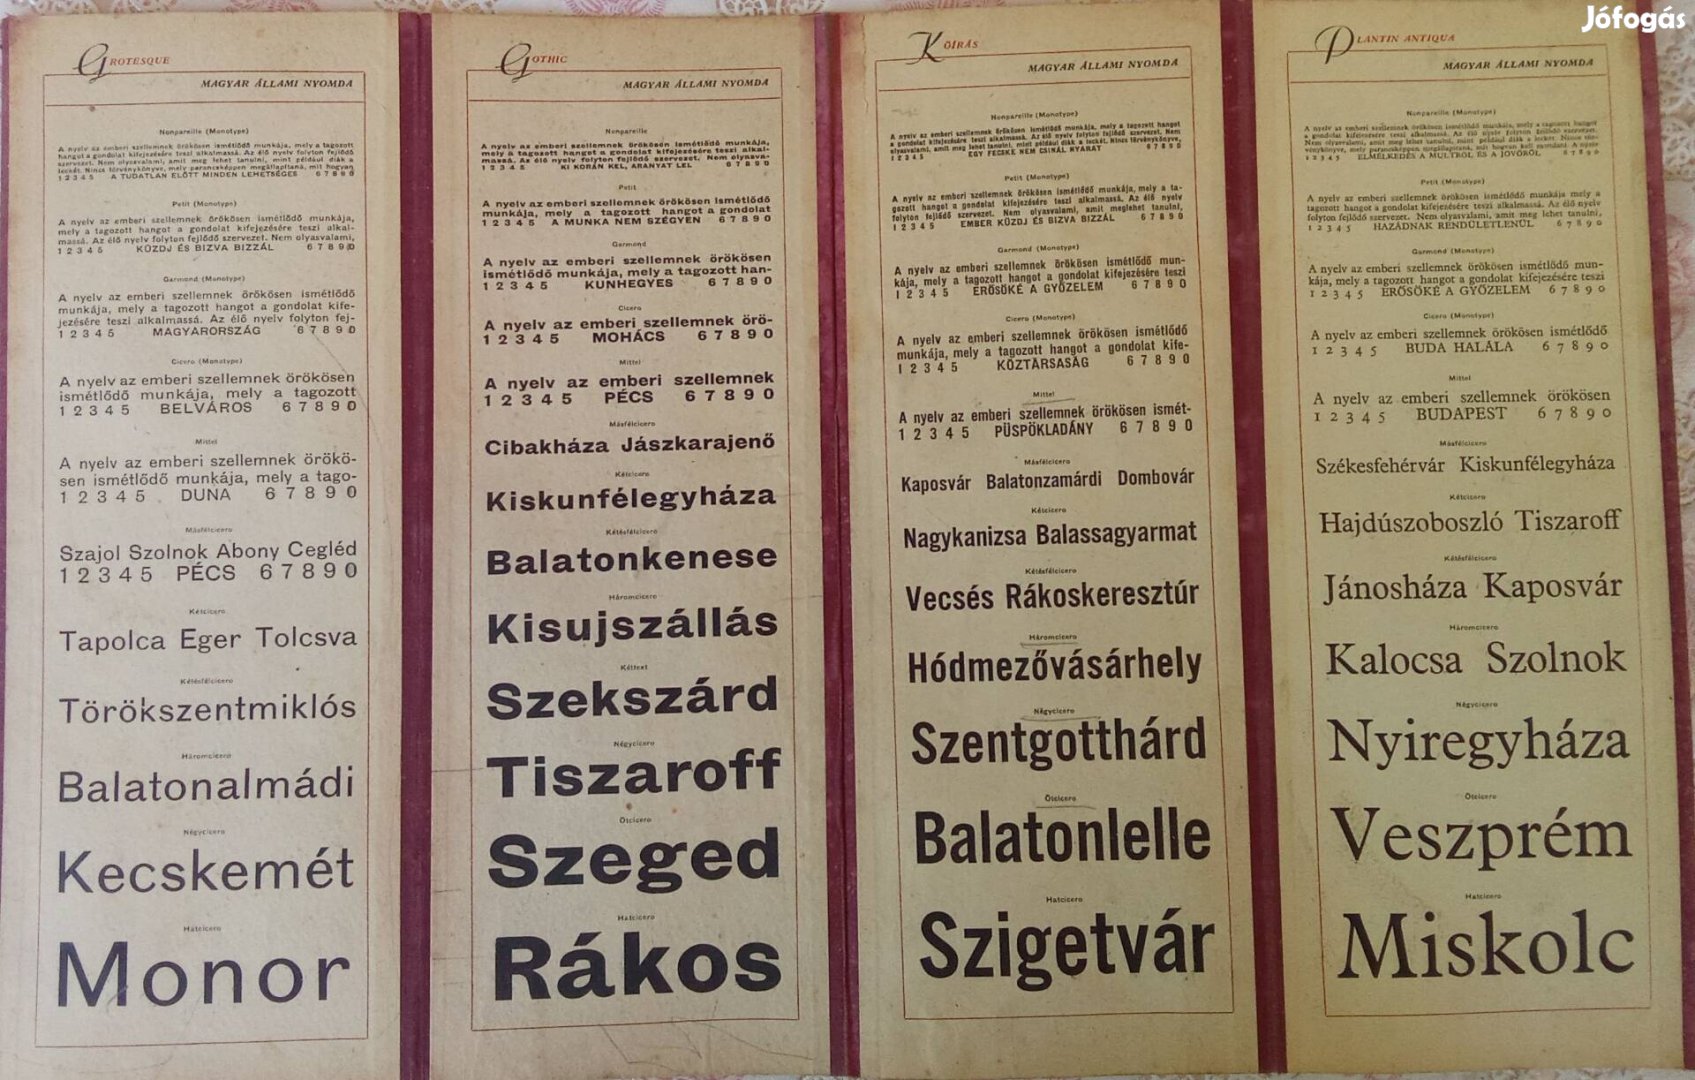 Magyar Állami Nyomda: Betűanyag -Mintafüzet 1947